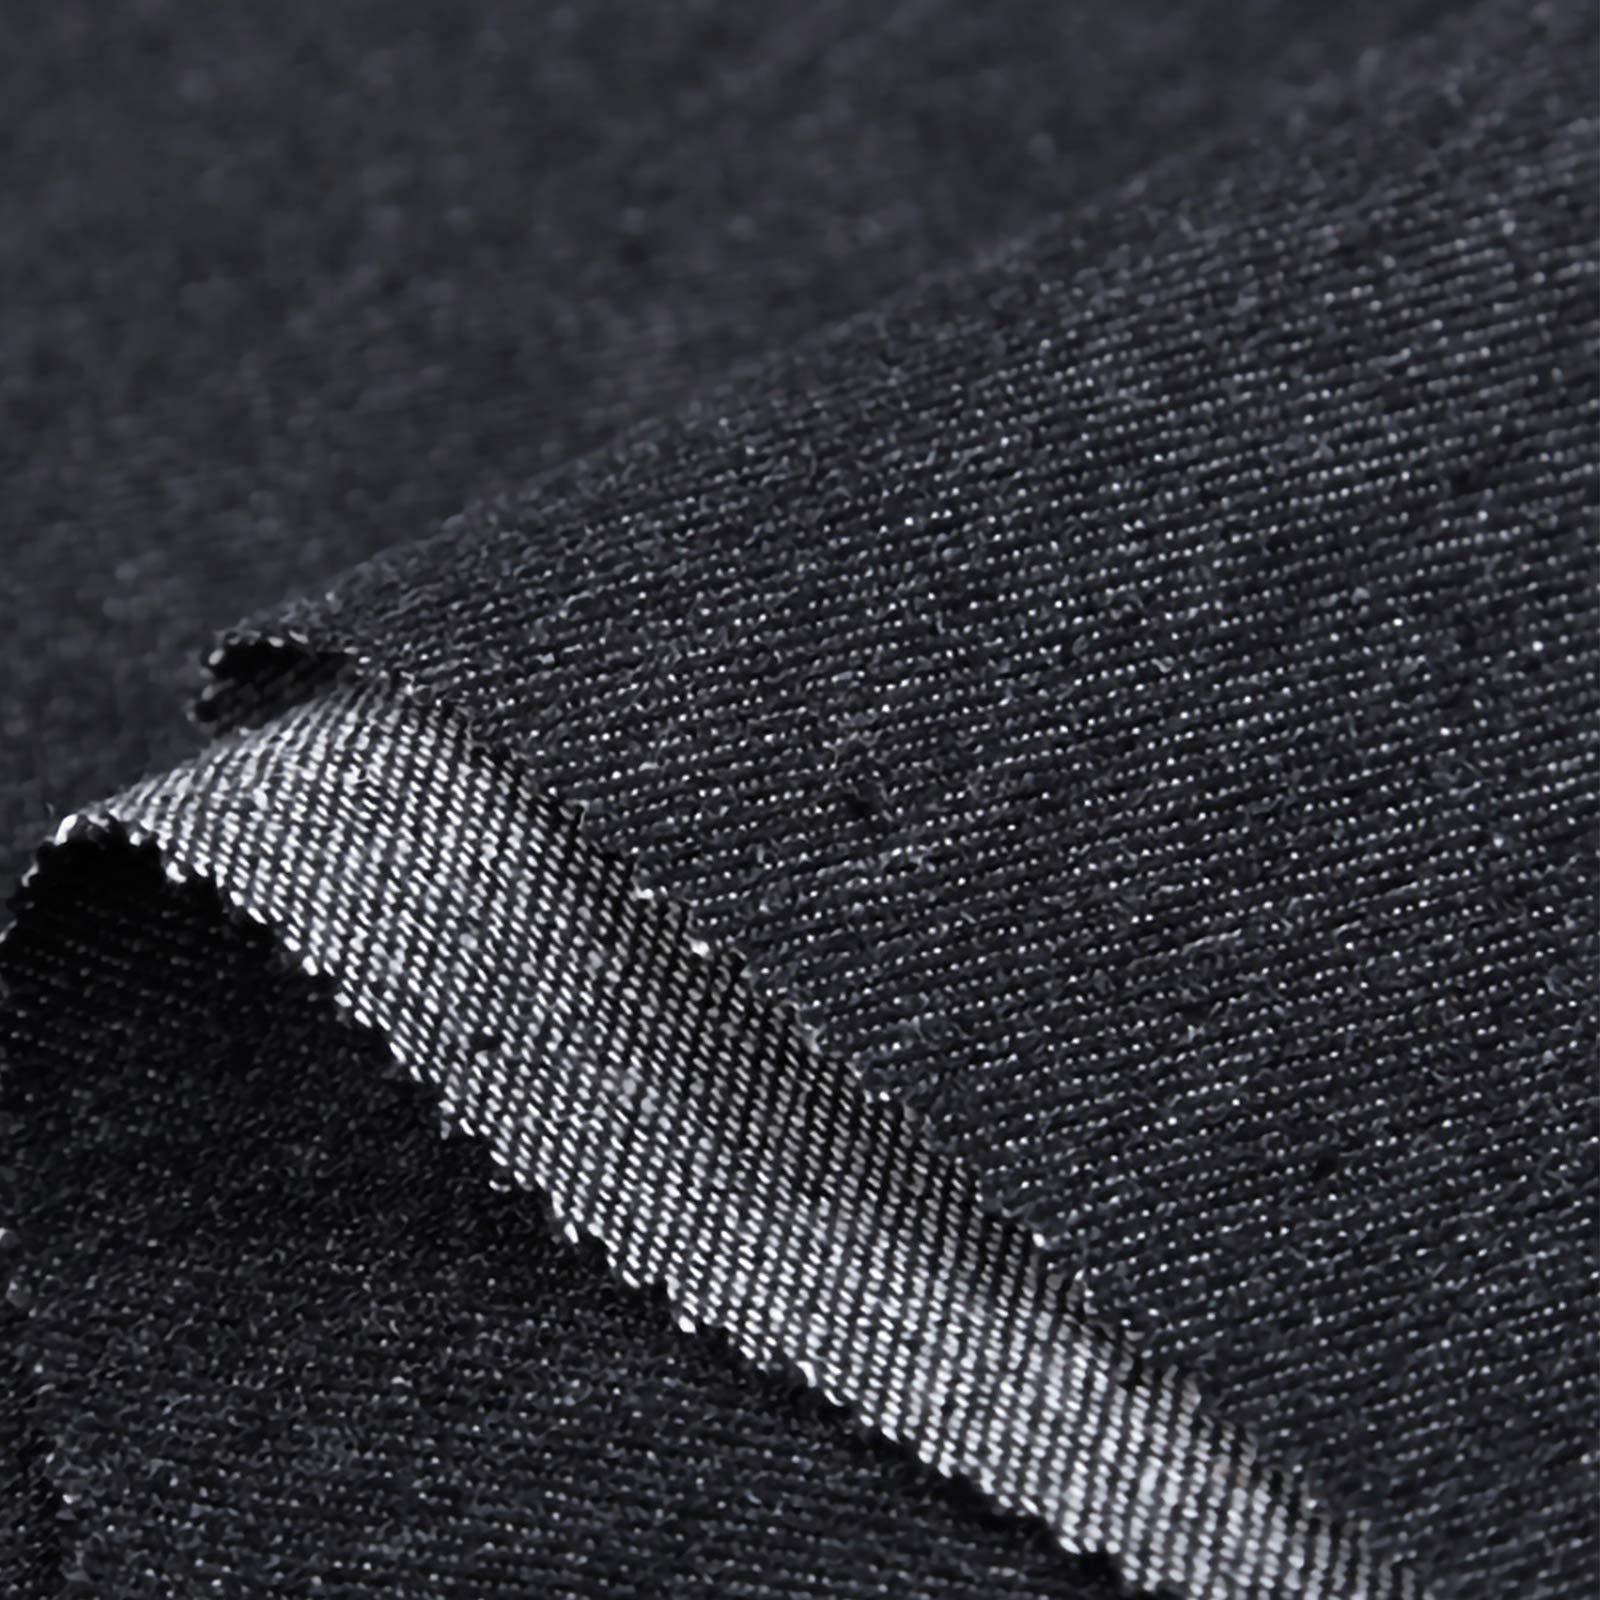 ZXC Jeansstoff Meterware 100% Baumwolle 150 cm Breit 1m Meterware Der Zum Nähen Von Kleidung,Beliebten Jeans,Vorhängen Und Wohnaccessoires Verwendet Wird(Color:schwarz)